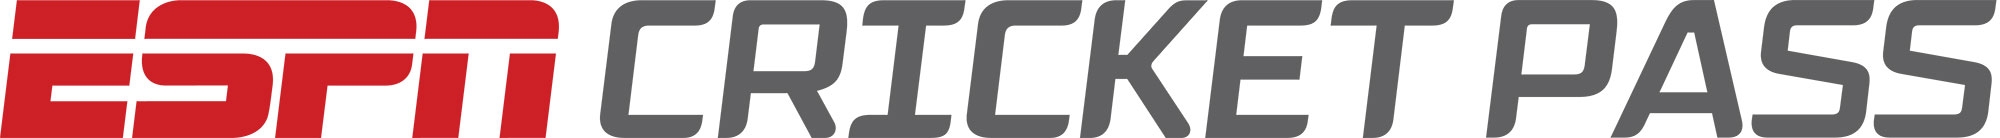 ESPN_Cricket_Pass_Logo - Copy